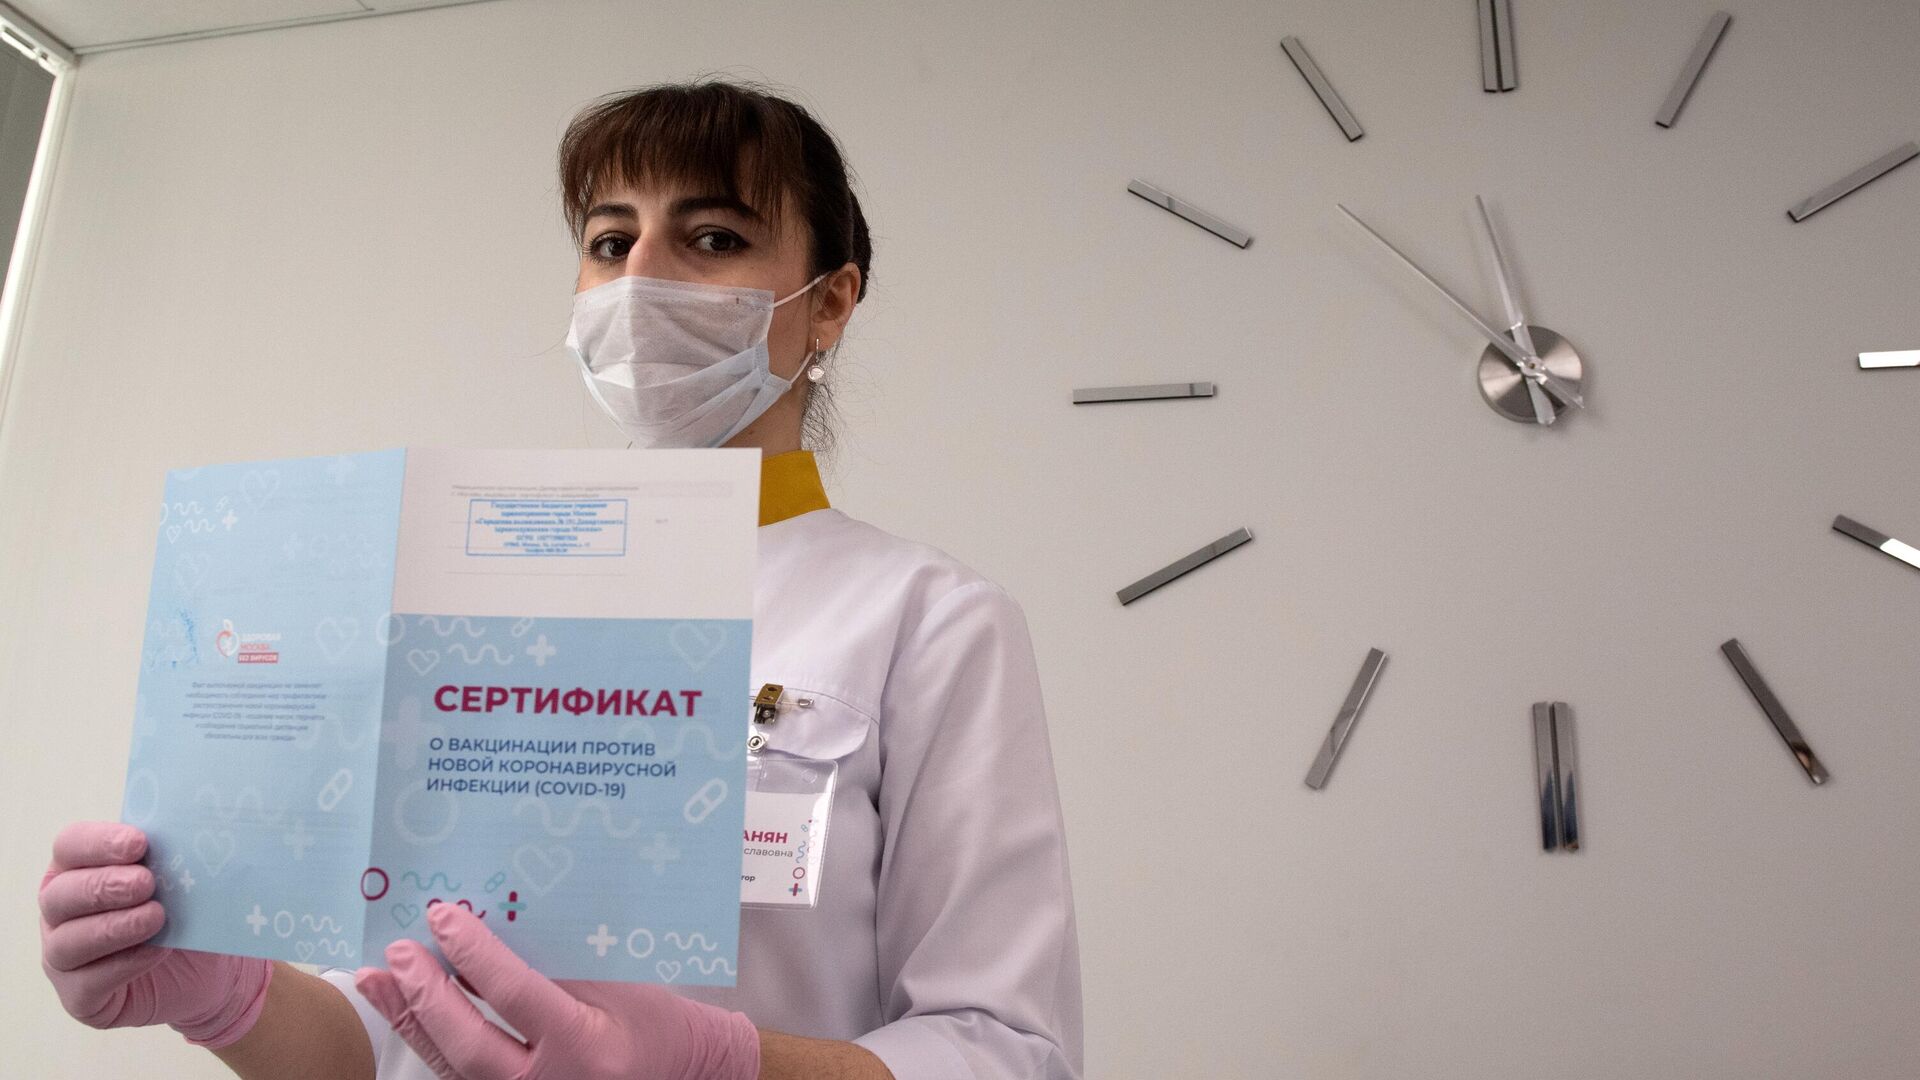 Медработник демонстрирует Сертификат о вакцинации от новой коронавирусной инфекции COVID-19 - РИА Новости, 1920, 07.12.2020